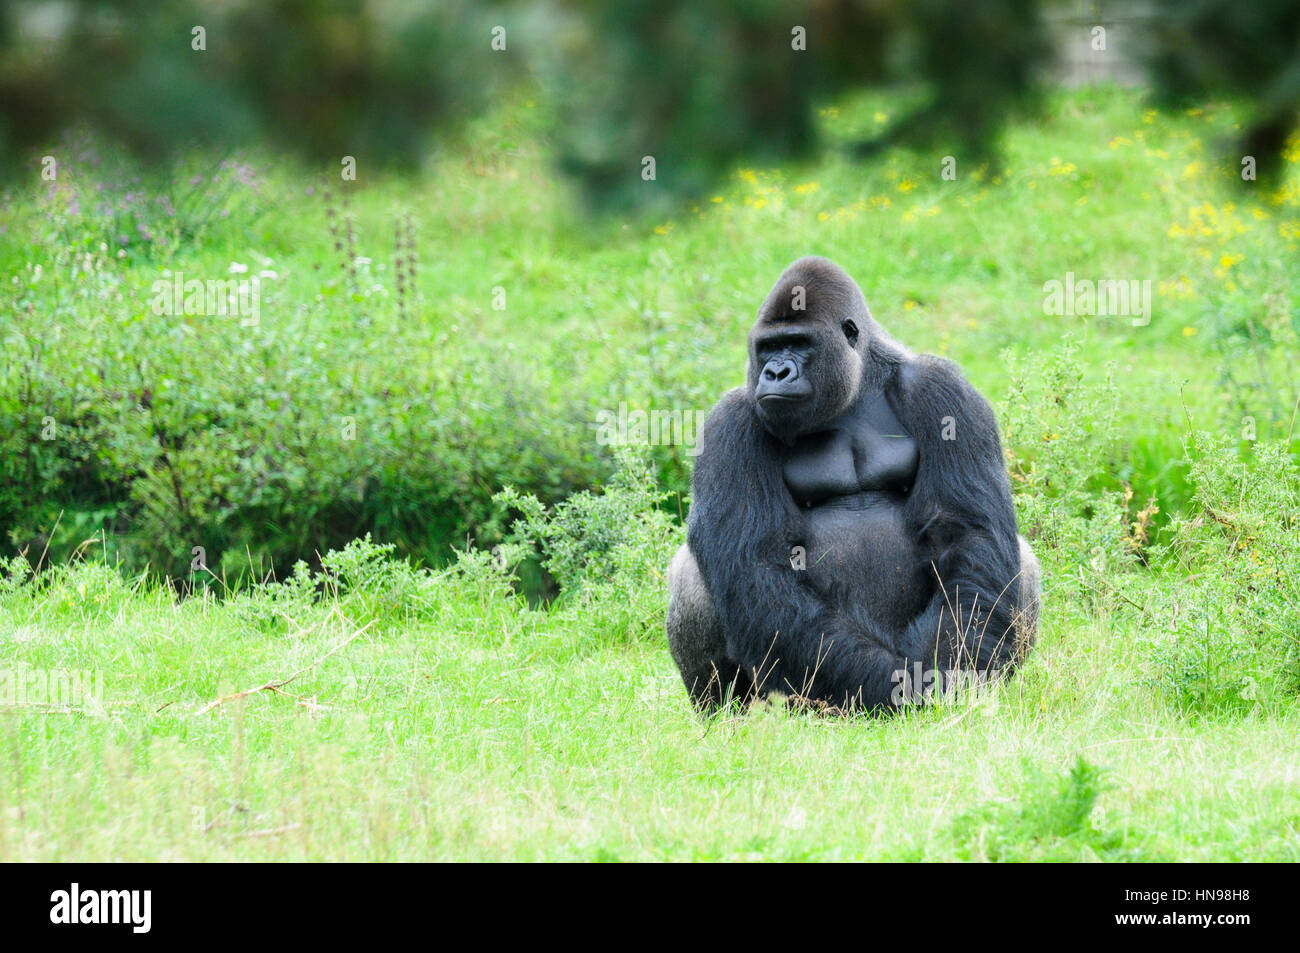 Gorilla sitzt ruhig auf dem Rasen und sieht düster Stockfoto